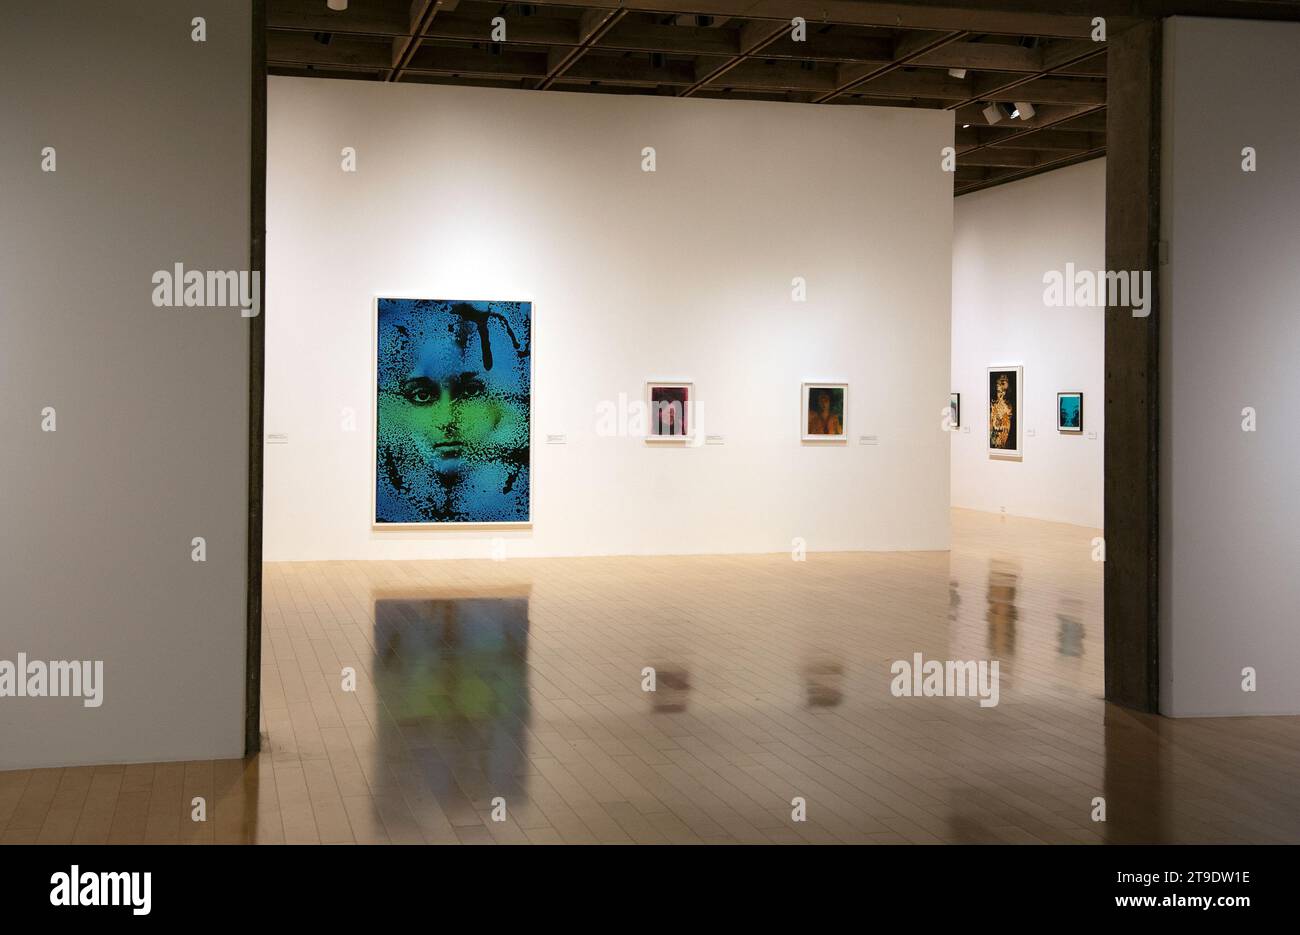 Kali. Artographe, art, exposition, Palm Springs, Art, Musée, Californie, États-Unis Banque D'Images